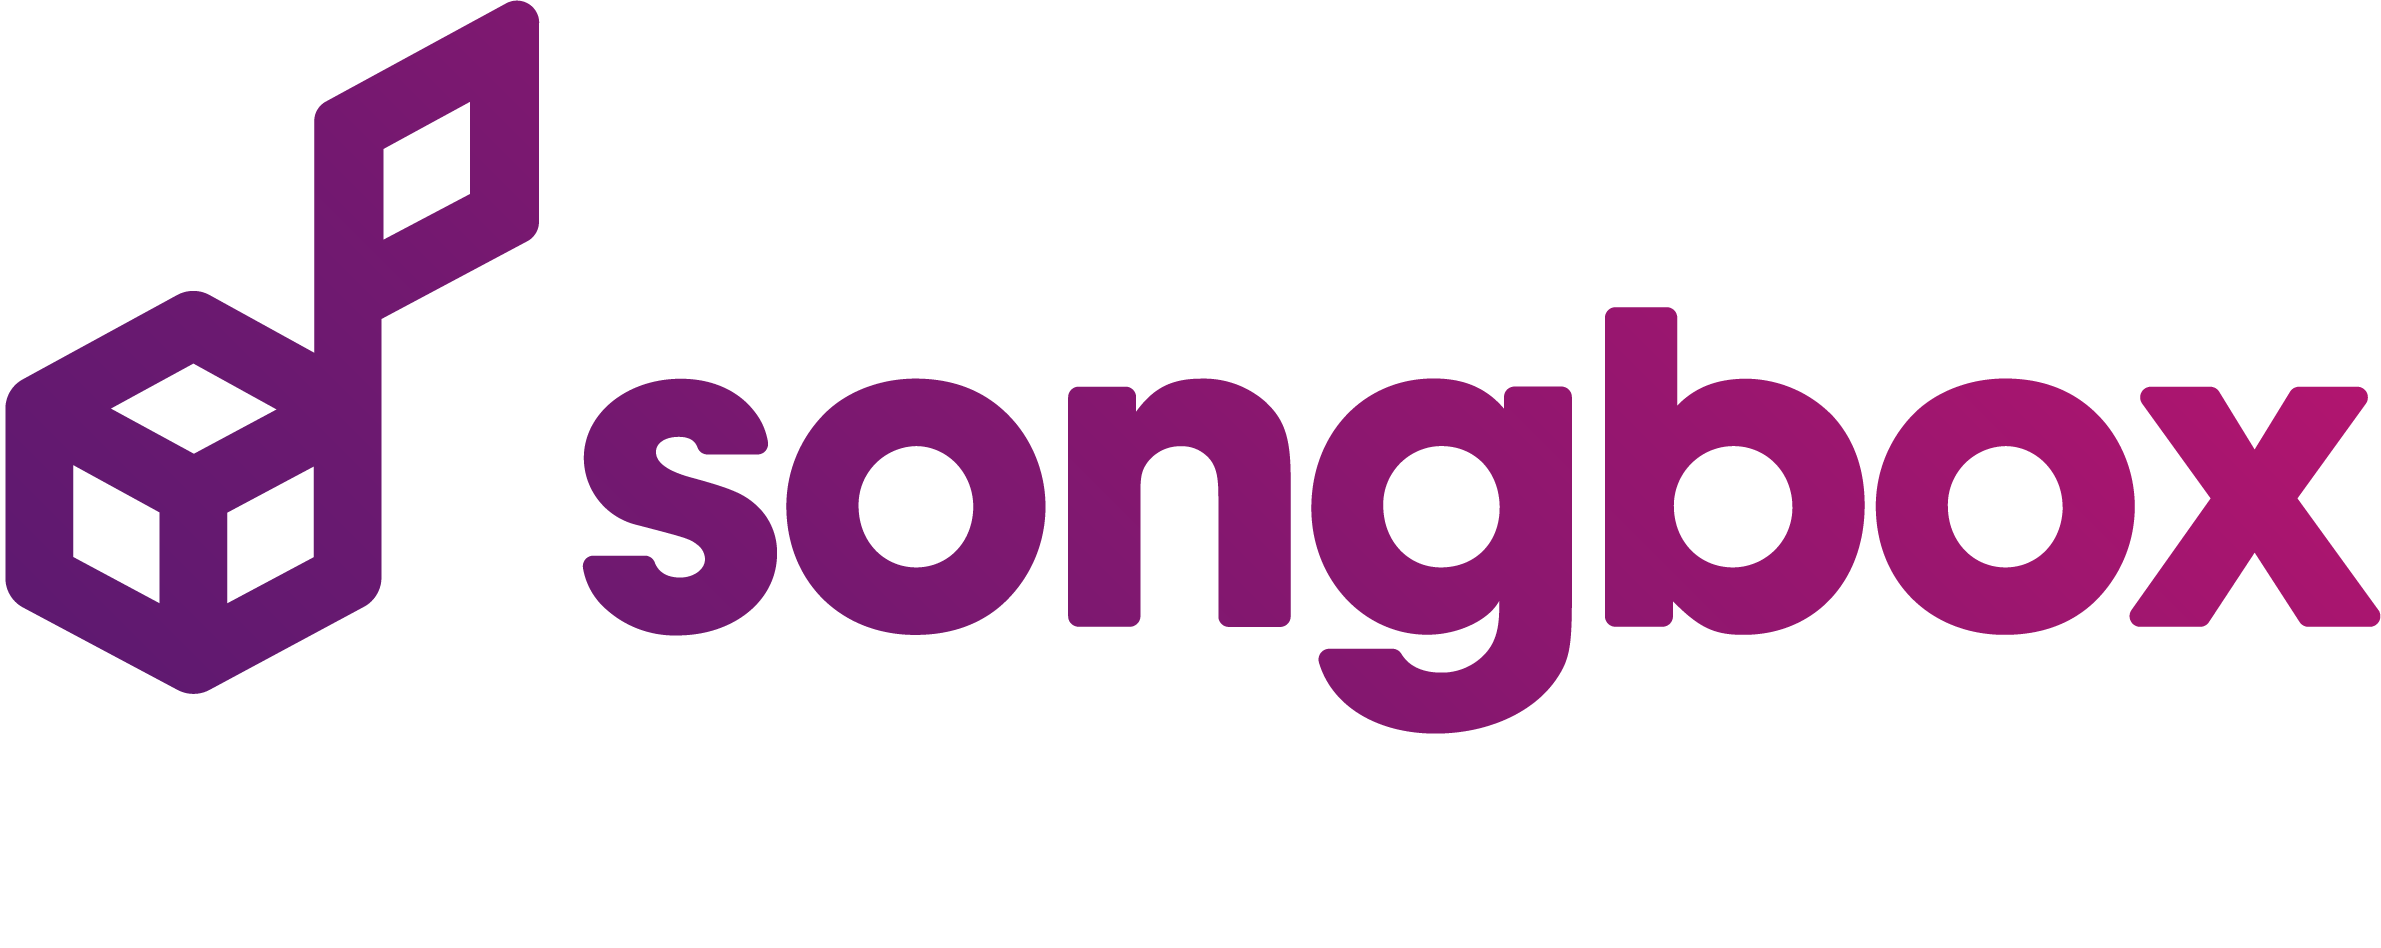 Songbox